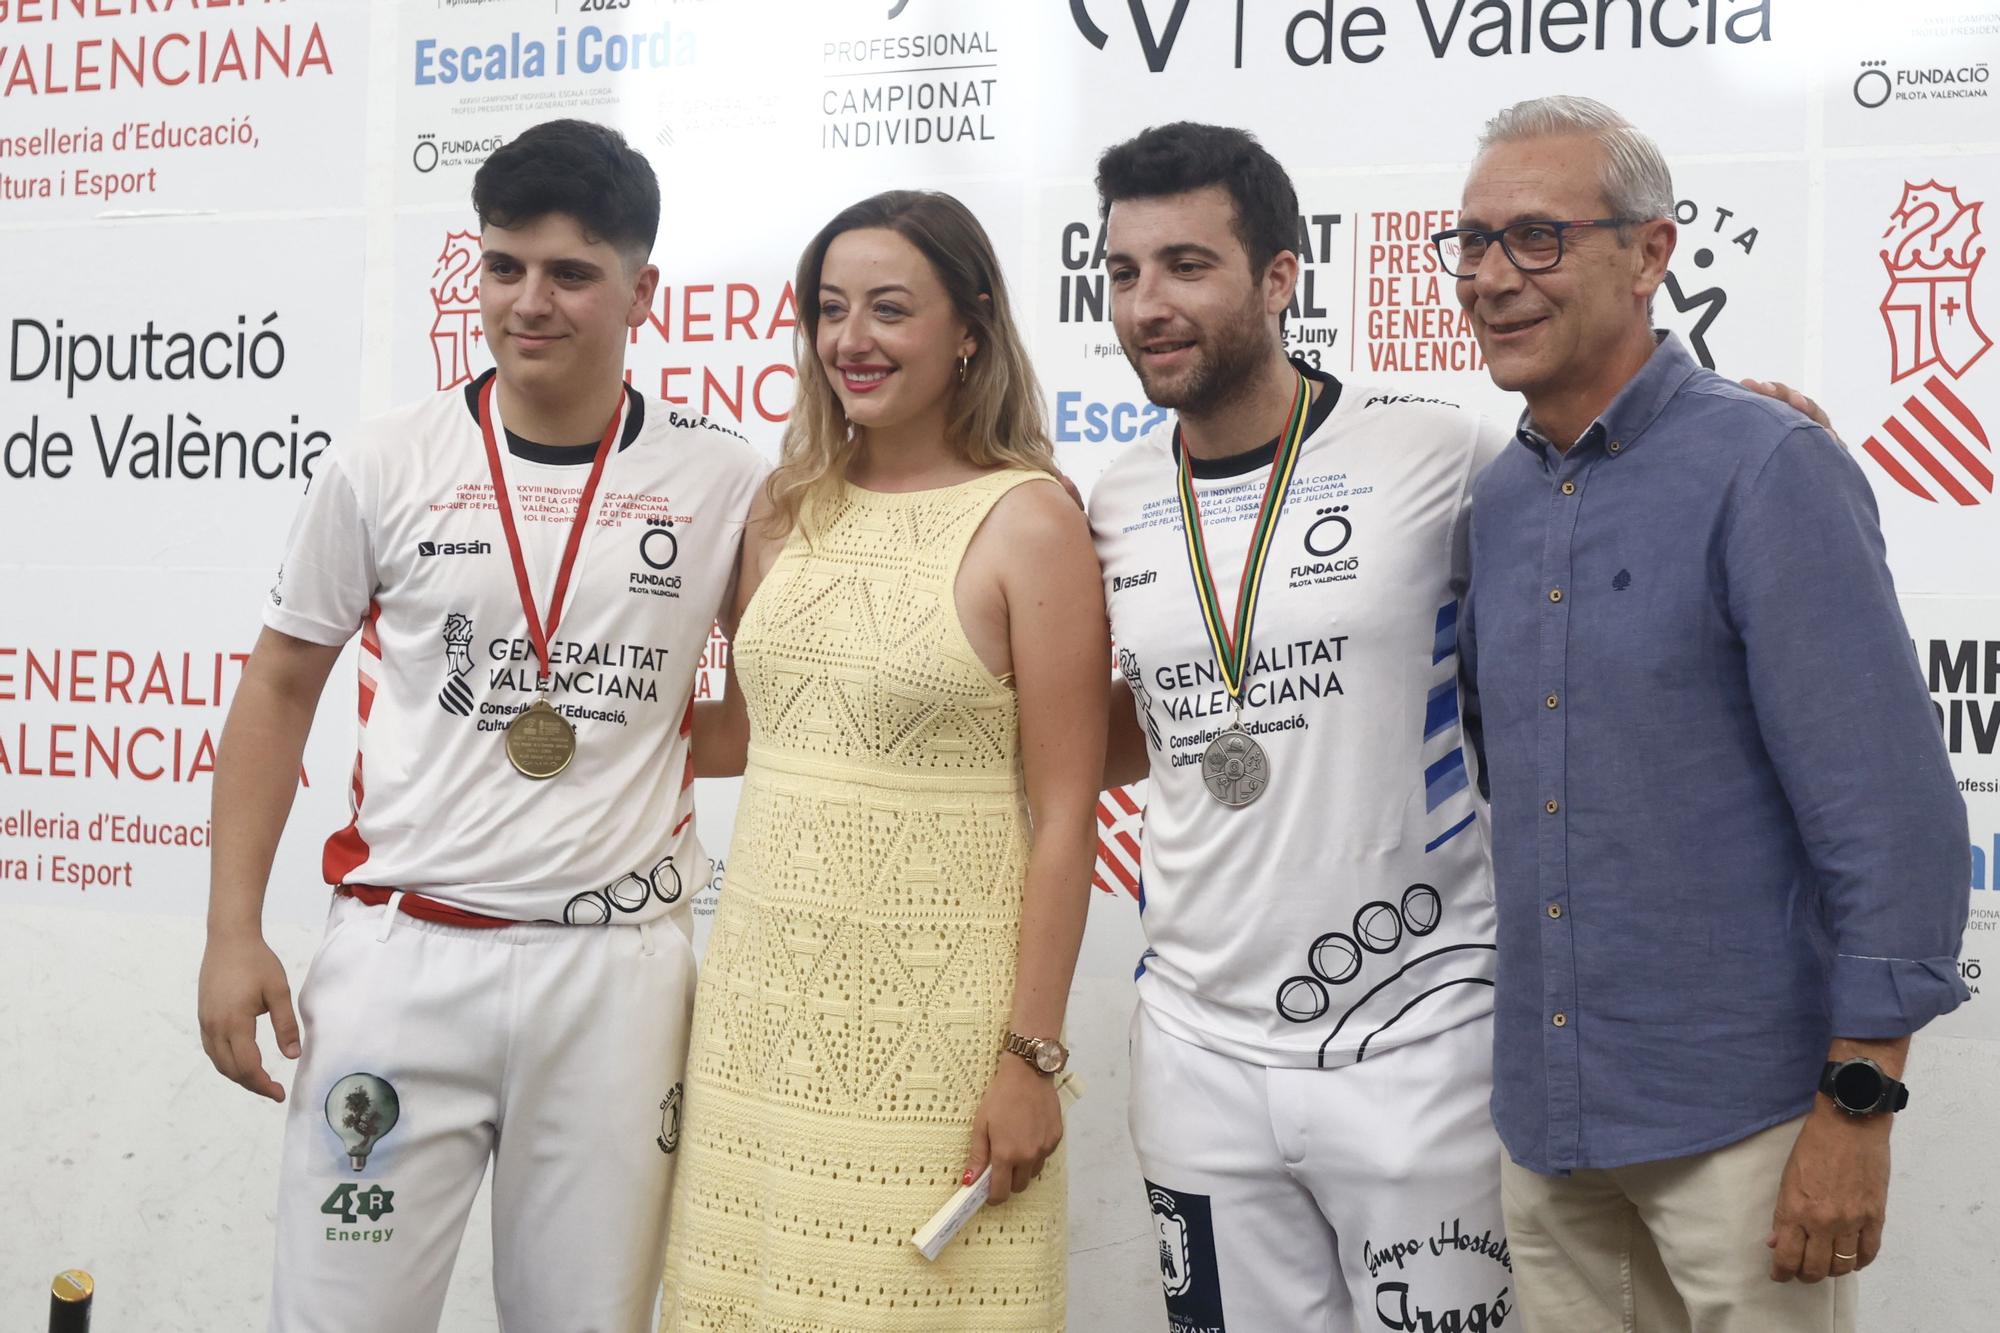 Final individual Trofeu President de la Generalitat Valenciana